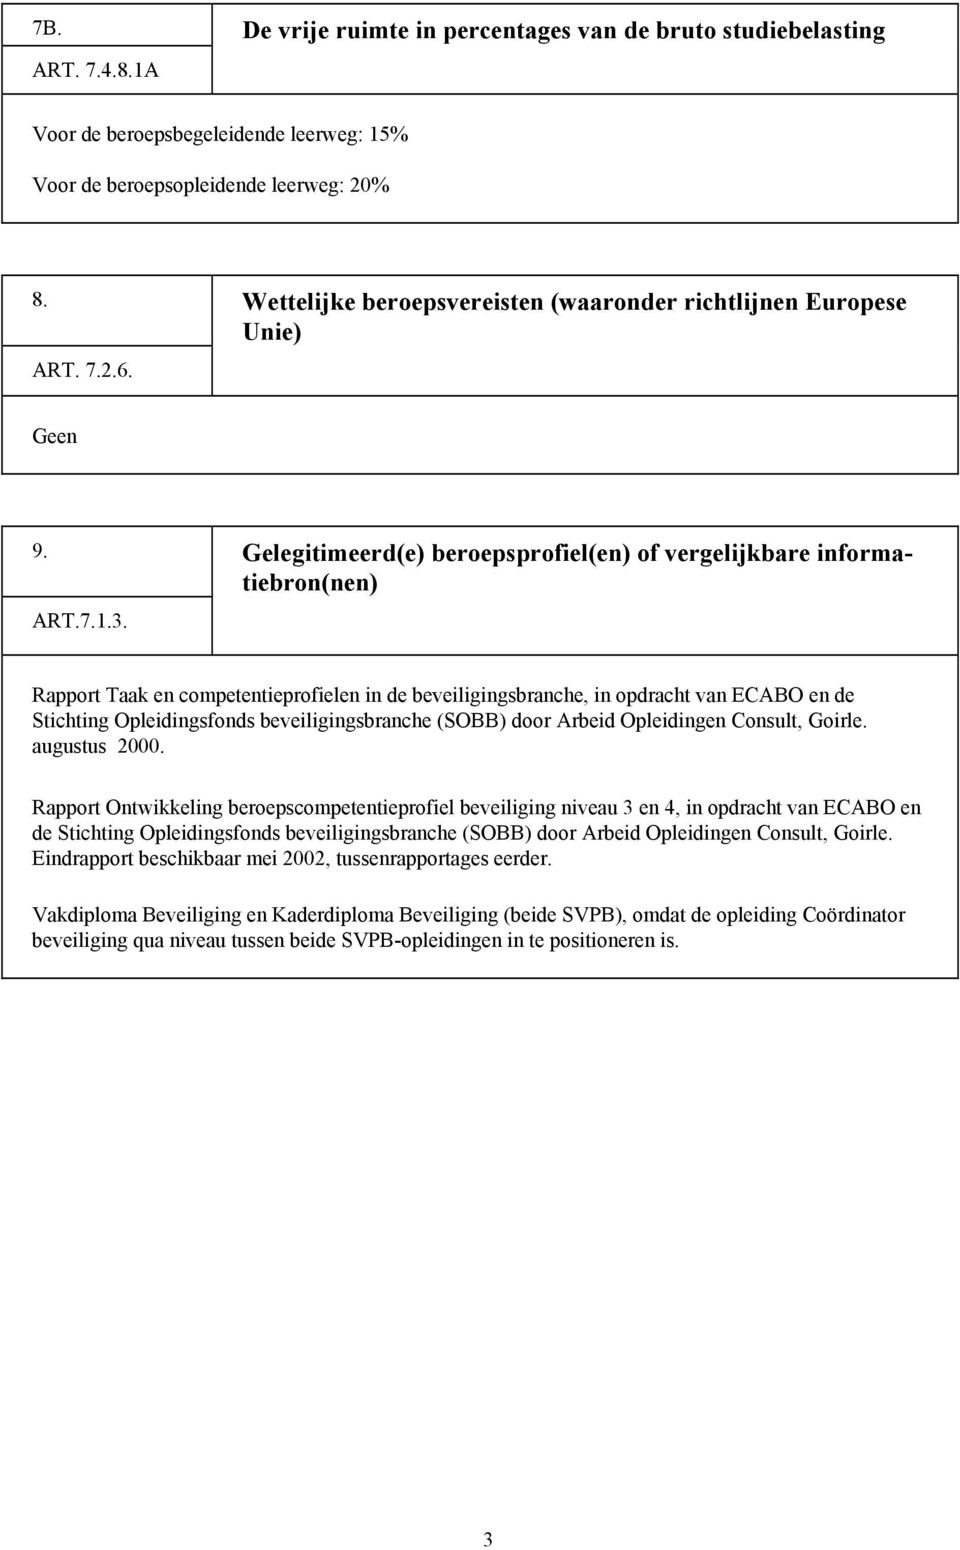 Rapport Taak en competentieprofielen in de beveiligingsbranche, in opdracht van ECABO en de Stichting Opleidingsfonds beveiligingsbranche (SOBB) door Arbeid Opleidingen Consult, Goirle. augustus 2000.